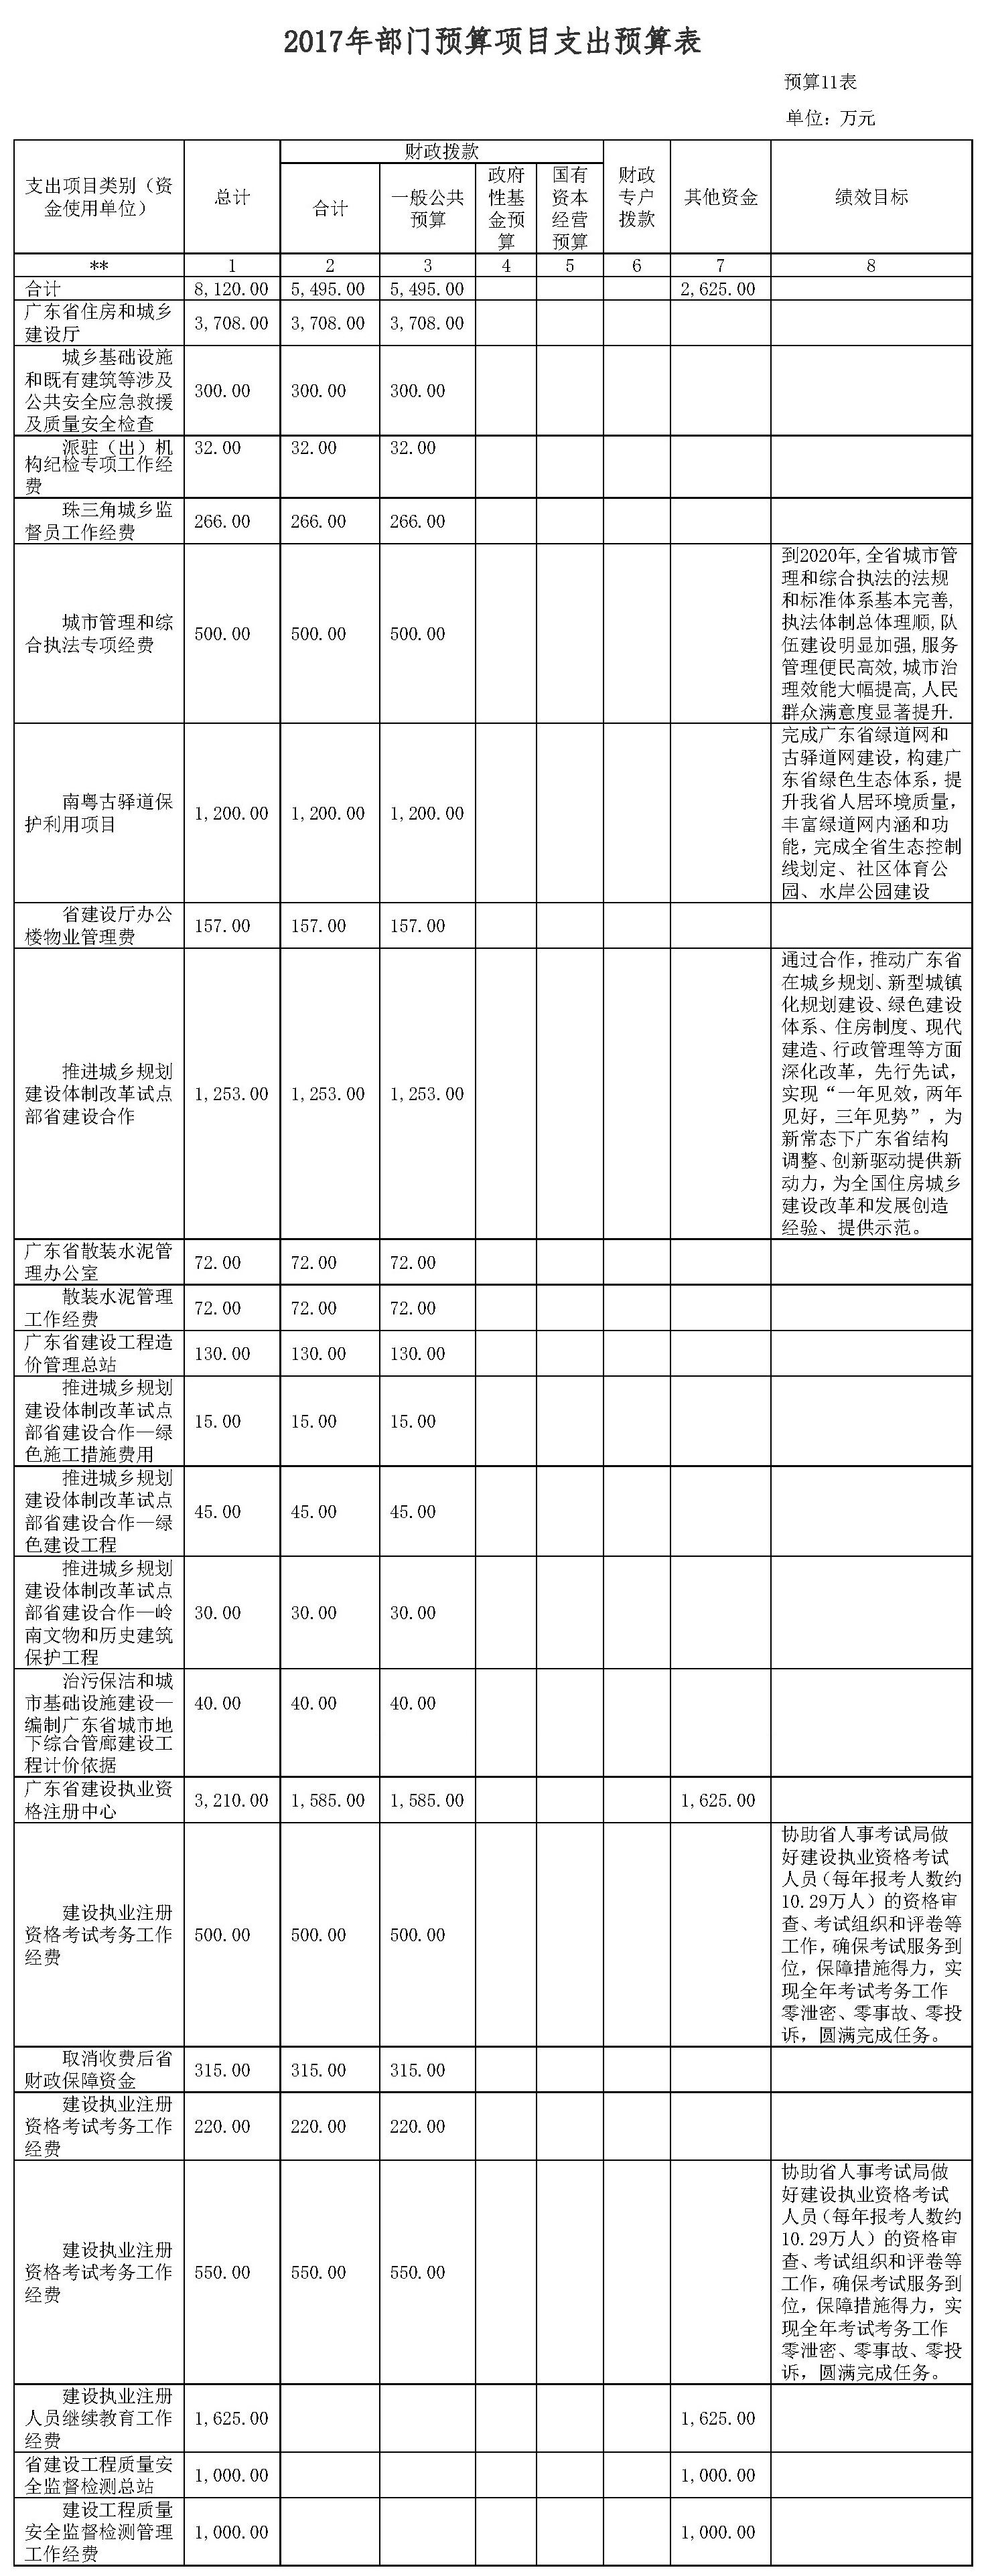 广东省住房和城乡建设厅2017年部门预算公开11